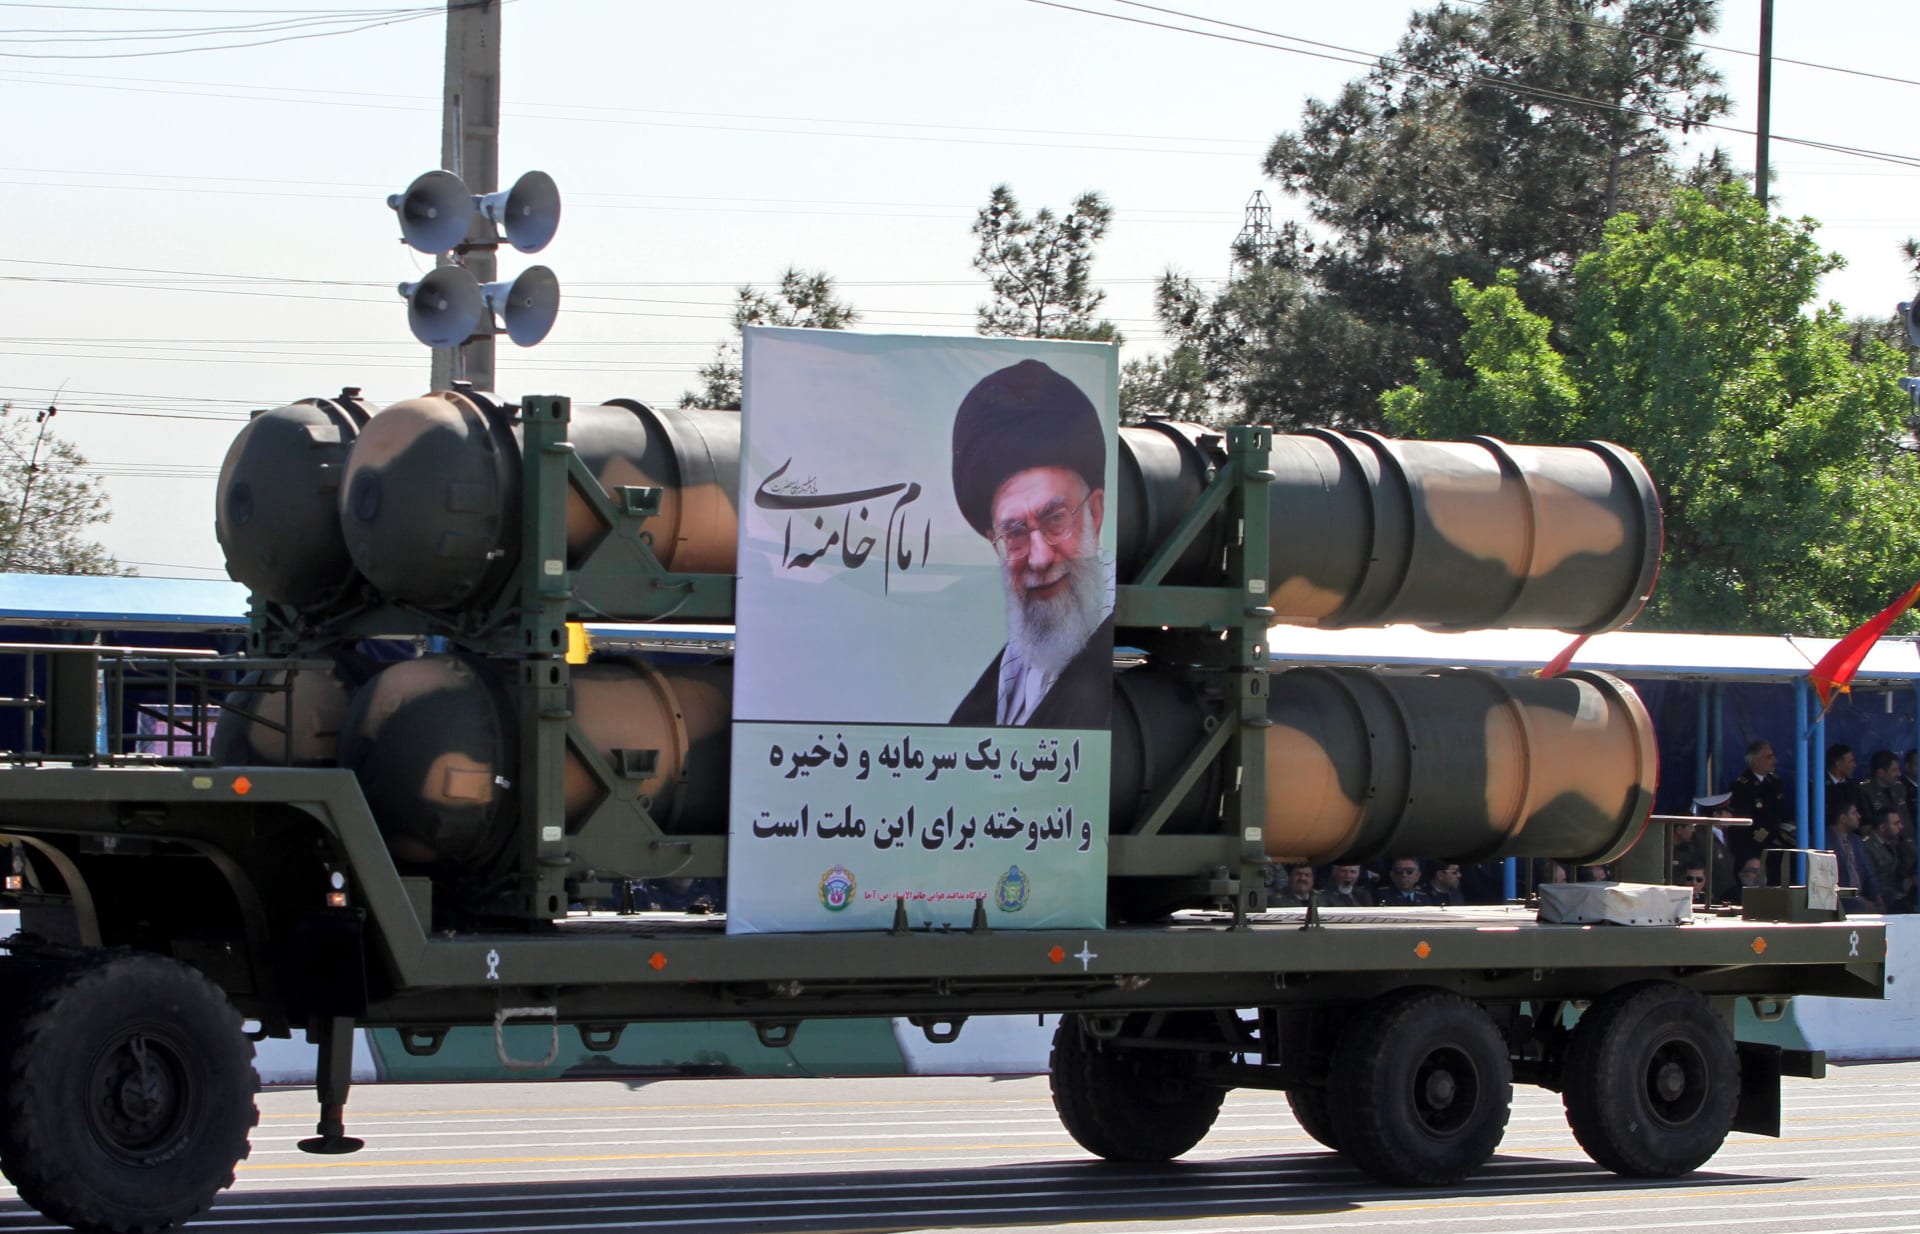 إيران: أمريكا انتهكت الاتفاق النووي وتريد إسقاط النظام والإسلام